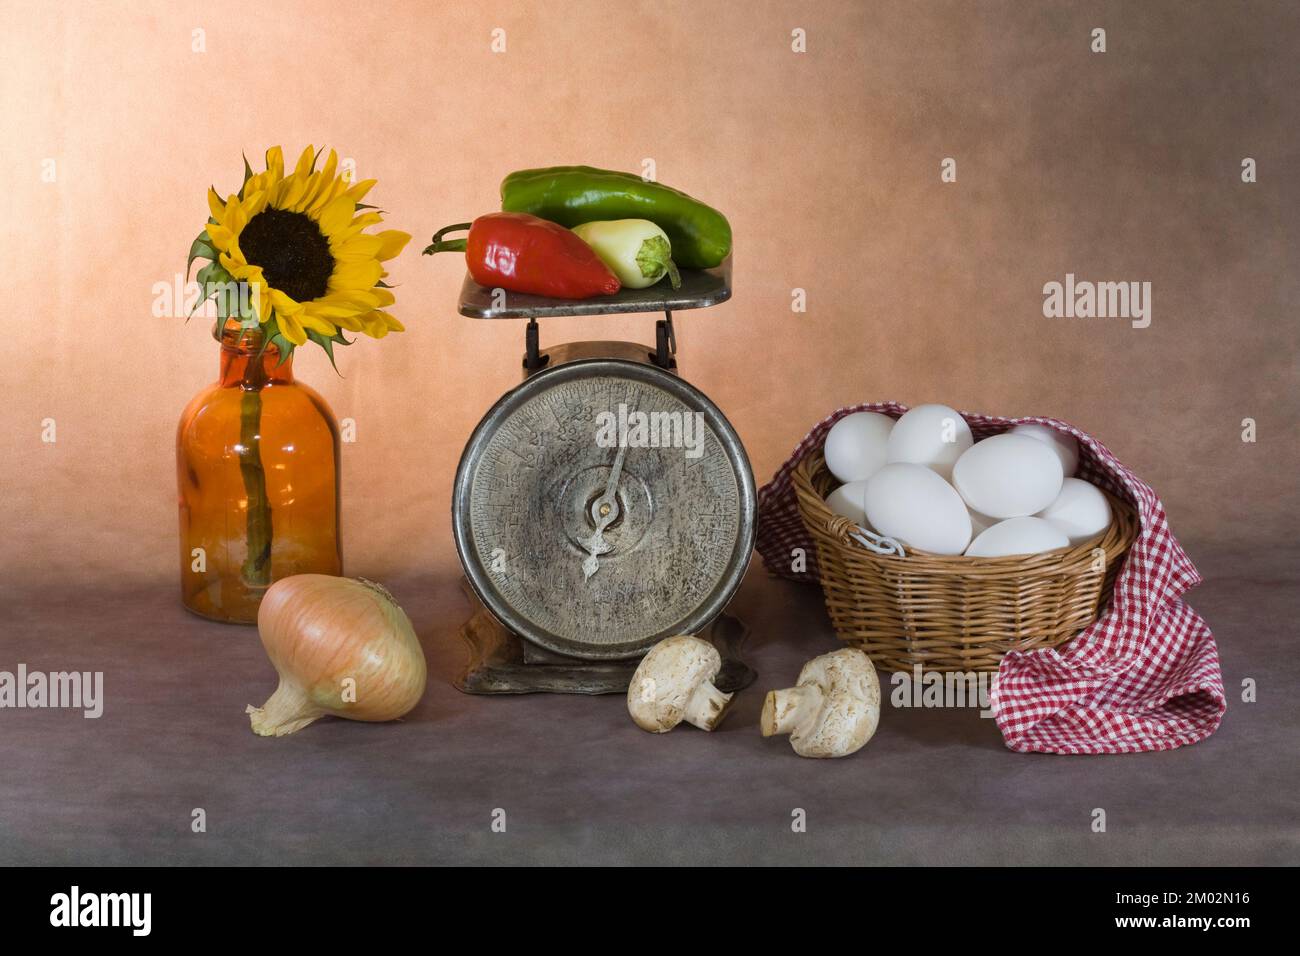 Una bella fotografia di vita d'arte di una dozzina di uova in un cesto, verdure su una scala vecchia, e un girasole in una bottiglia d'annata. Foto Stock